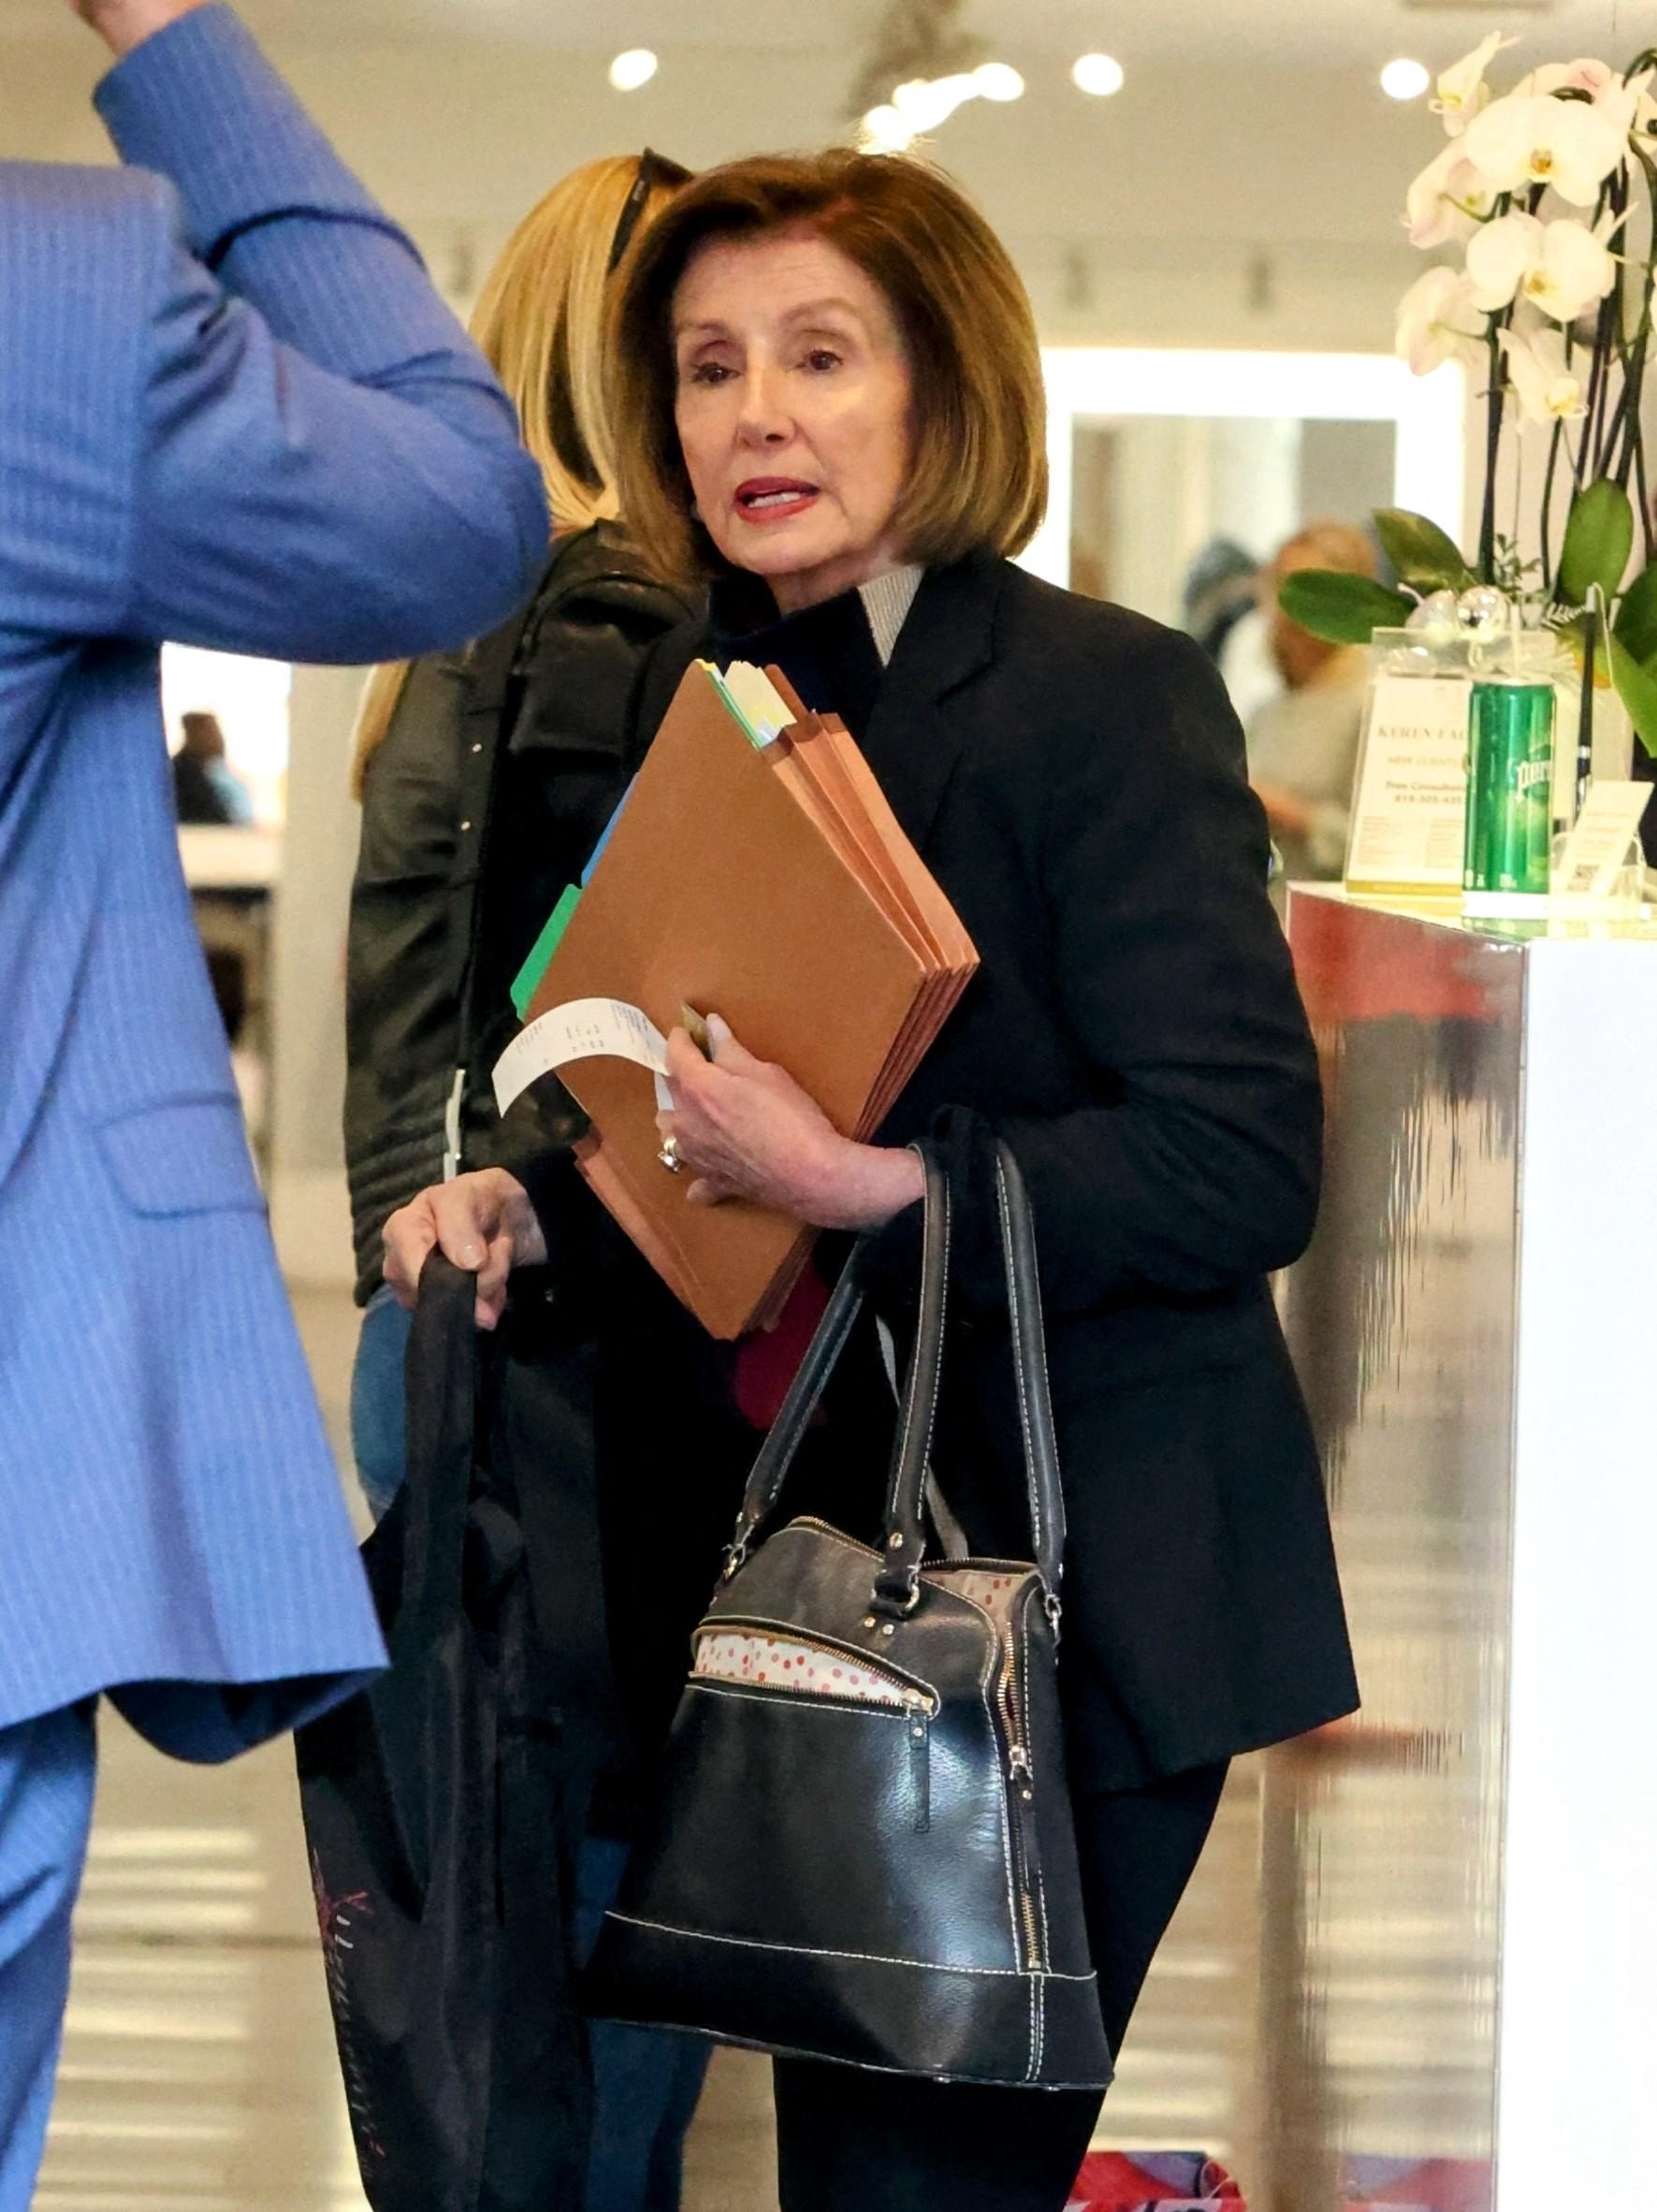 Nancy Pelosi in January